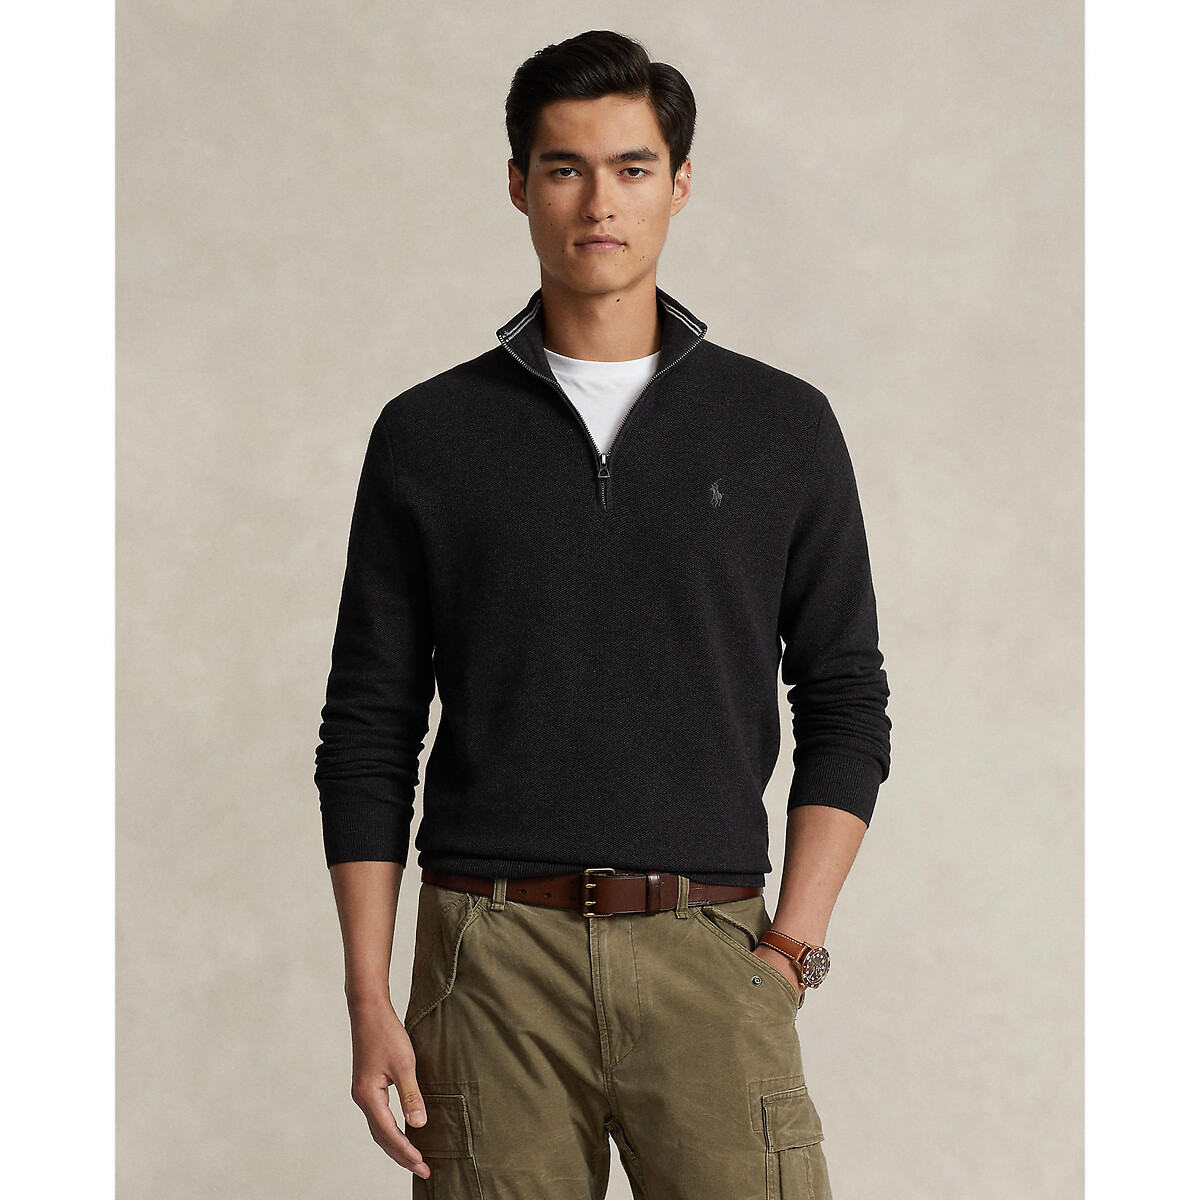 Пуловер с воротником-стойкой на молнии  S серый LaRedoute, размер S